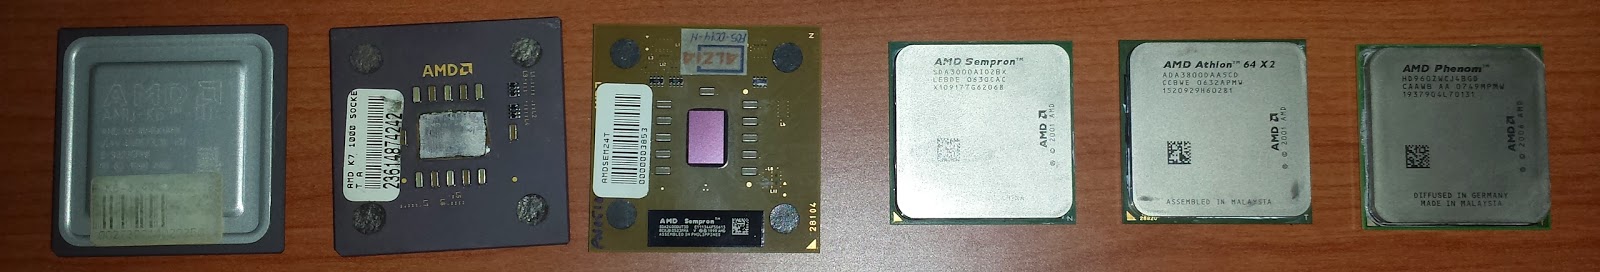 Procesadores AMD